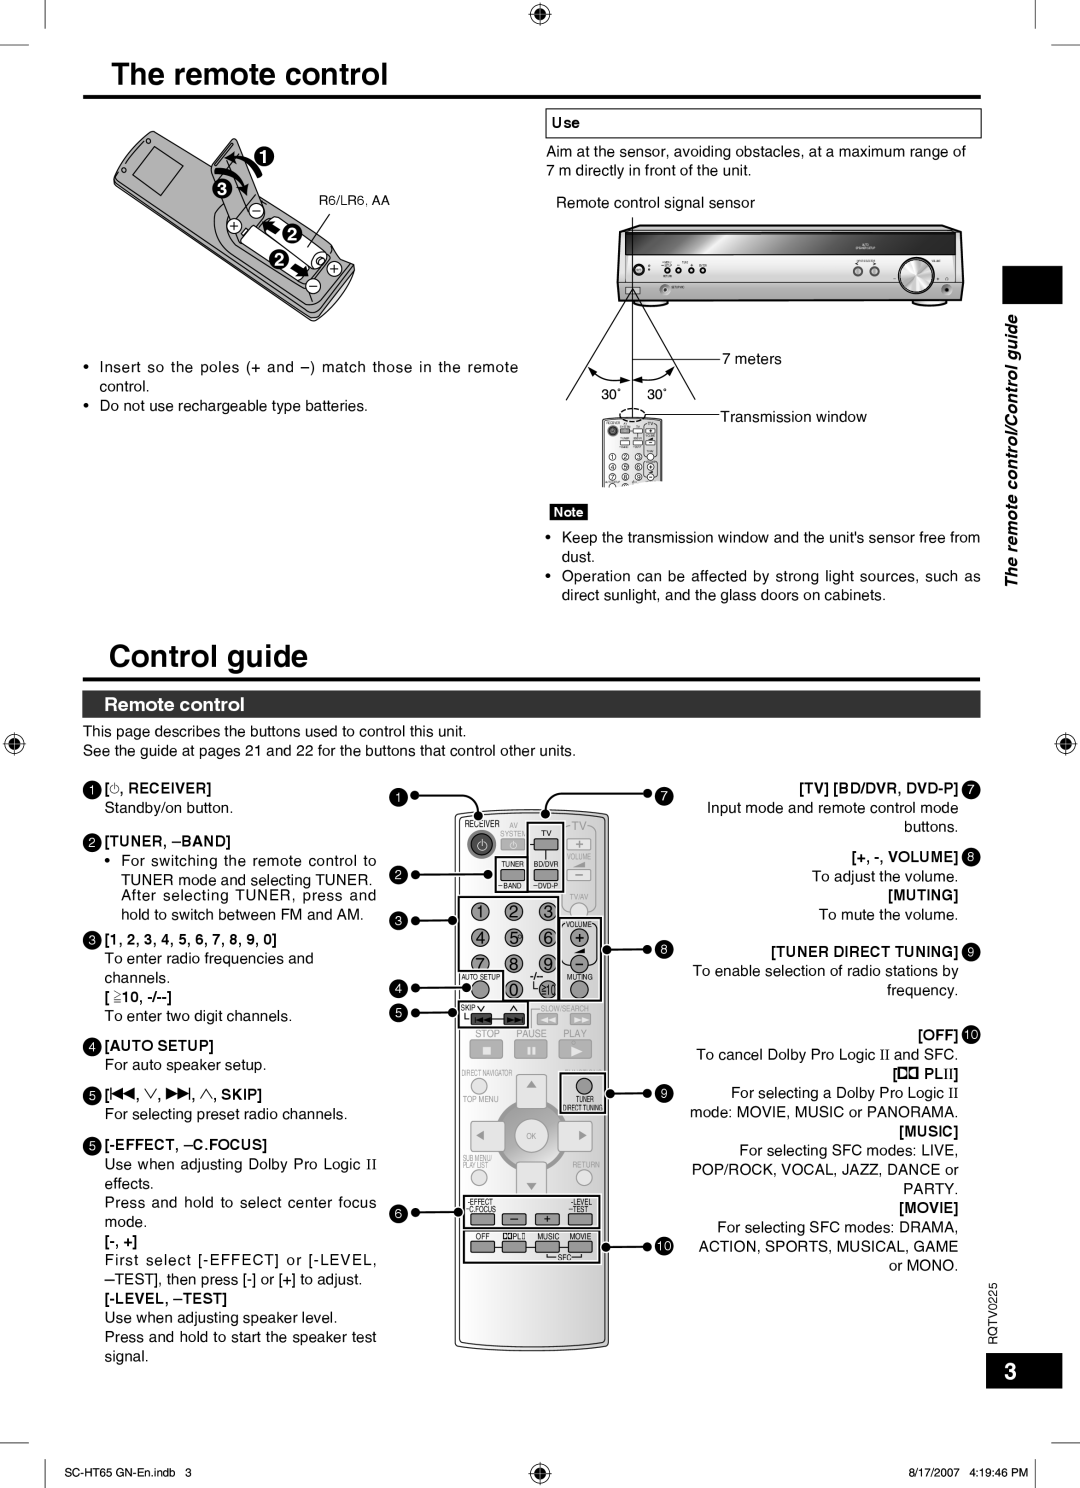 Panasonic SC-HT65 manual Remote control, The remote control/Control guide 